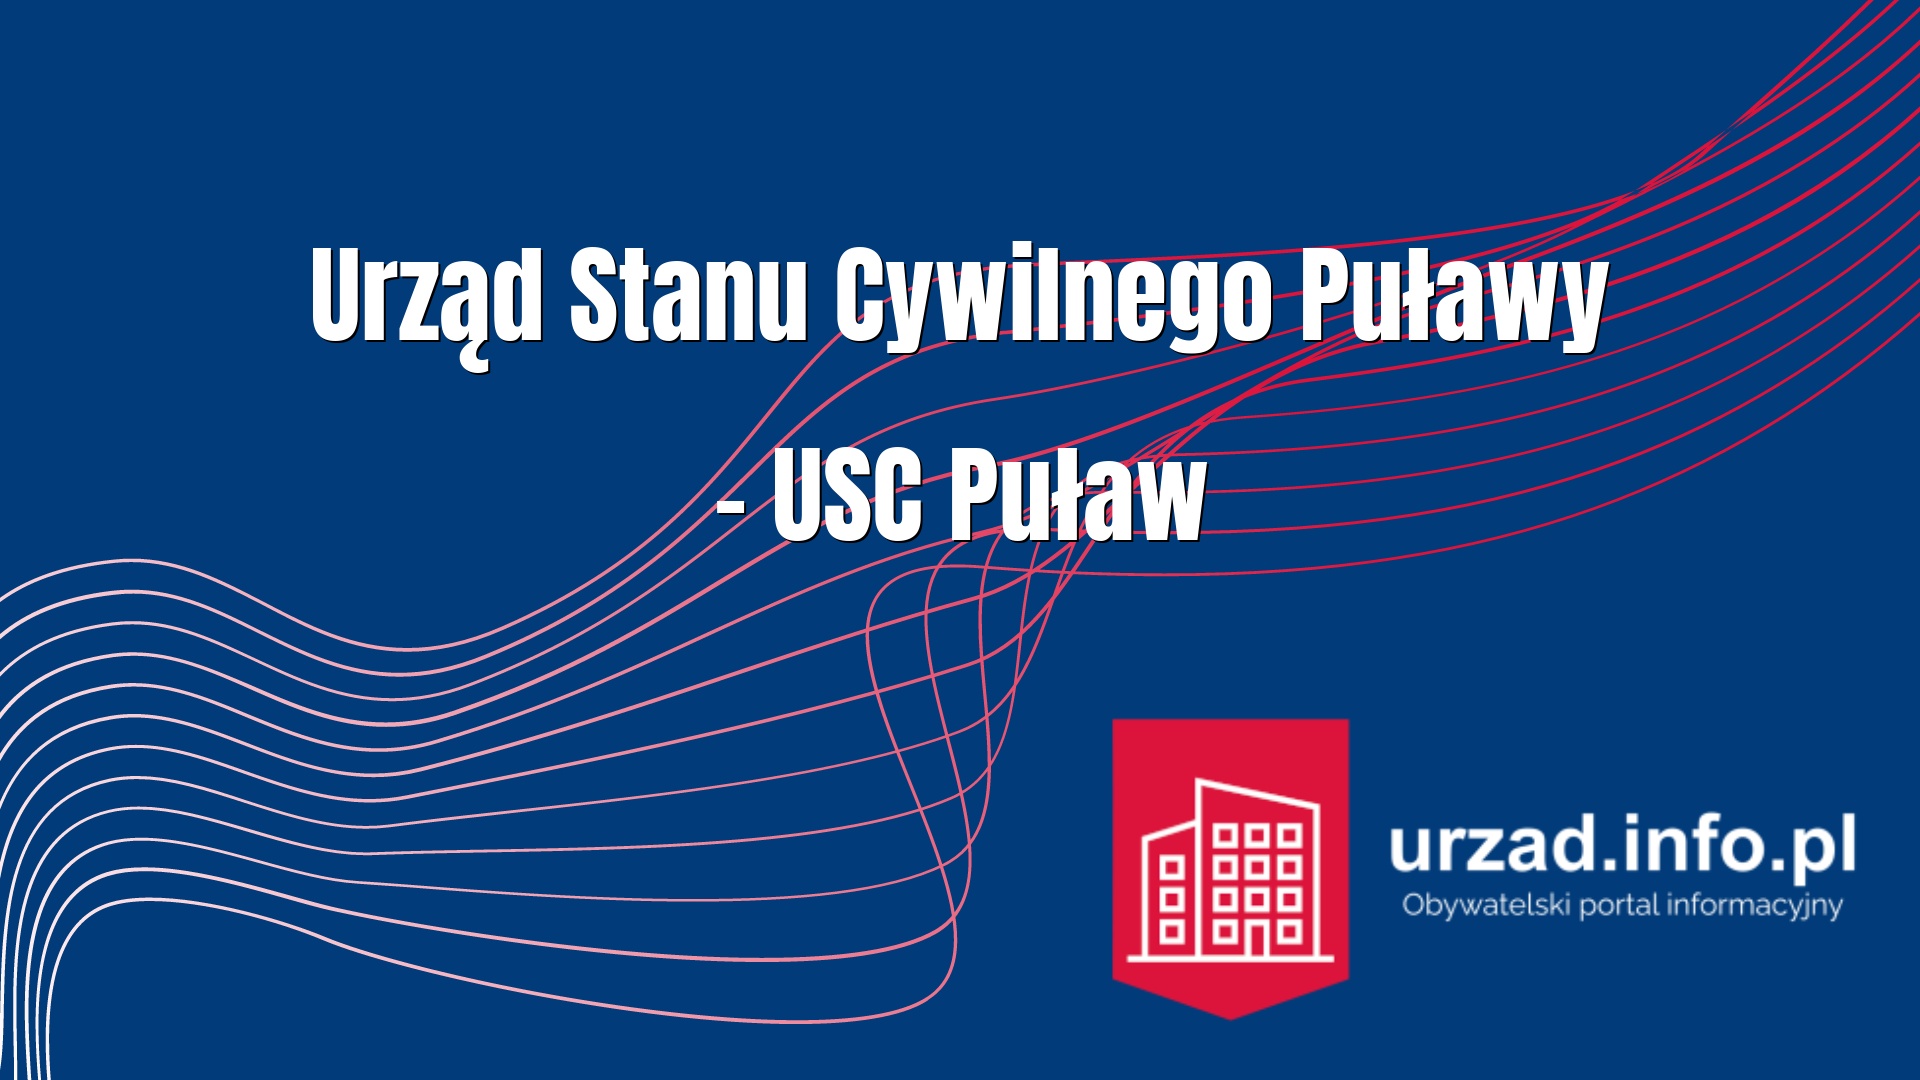 Urząd Stanu Cywilnego Puławy – USC Puław